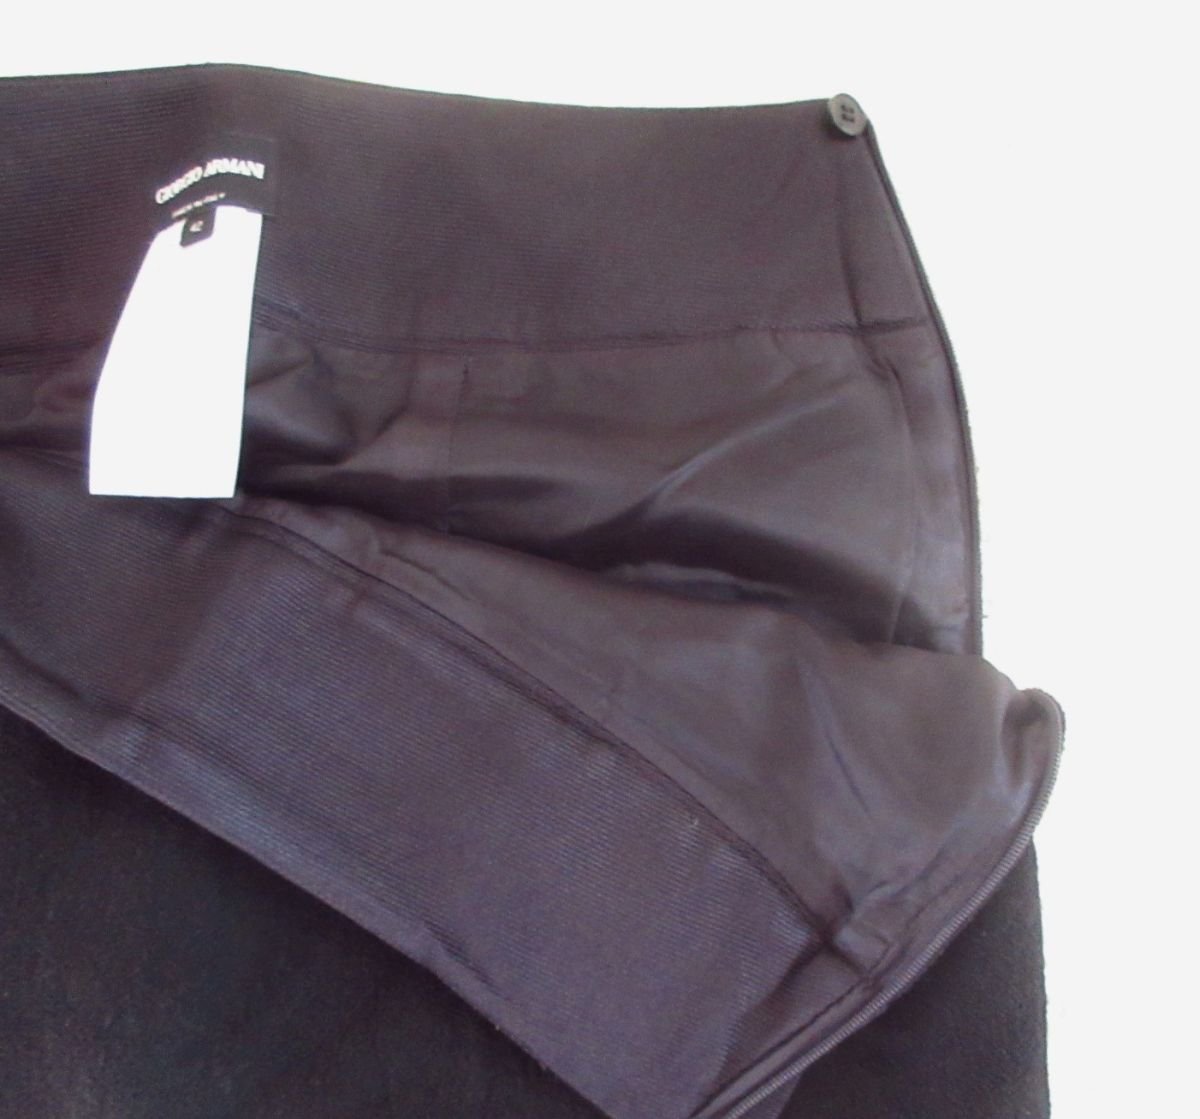  прекрасный товар GIORGIO ARMANIjoru geo Armani необычность материалы переключатель лента tuck колени длина вязаный юбка 42 чёрный черный 034